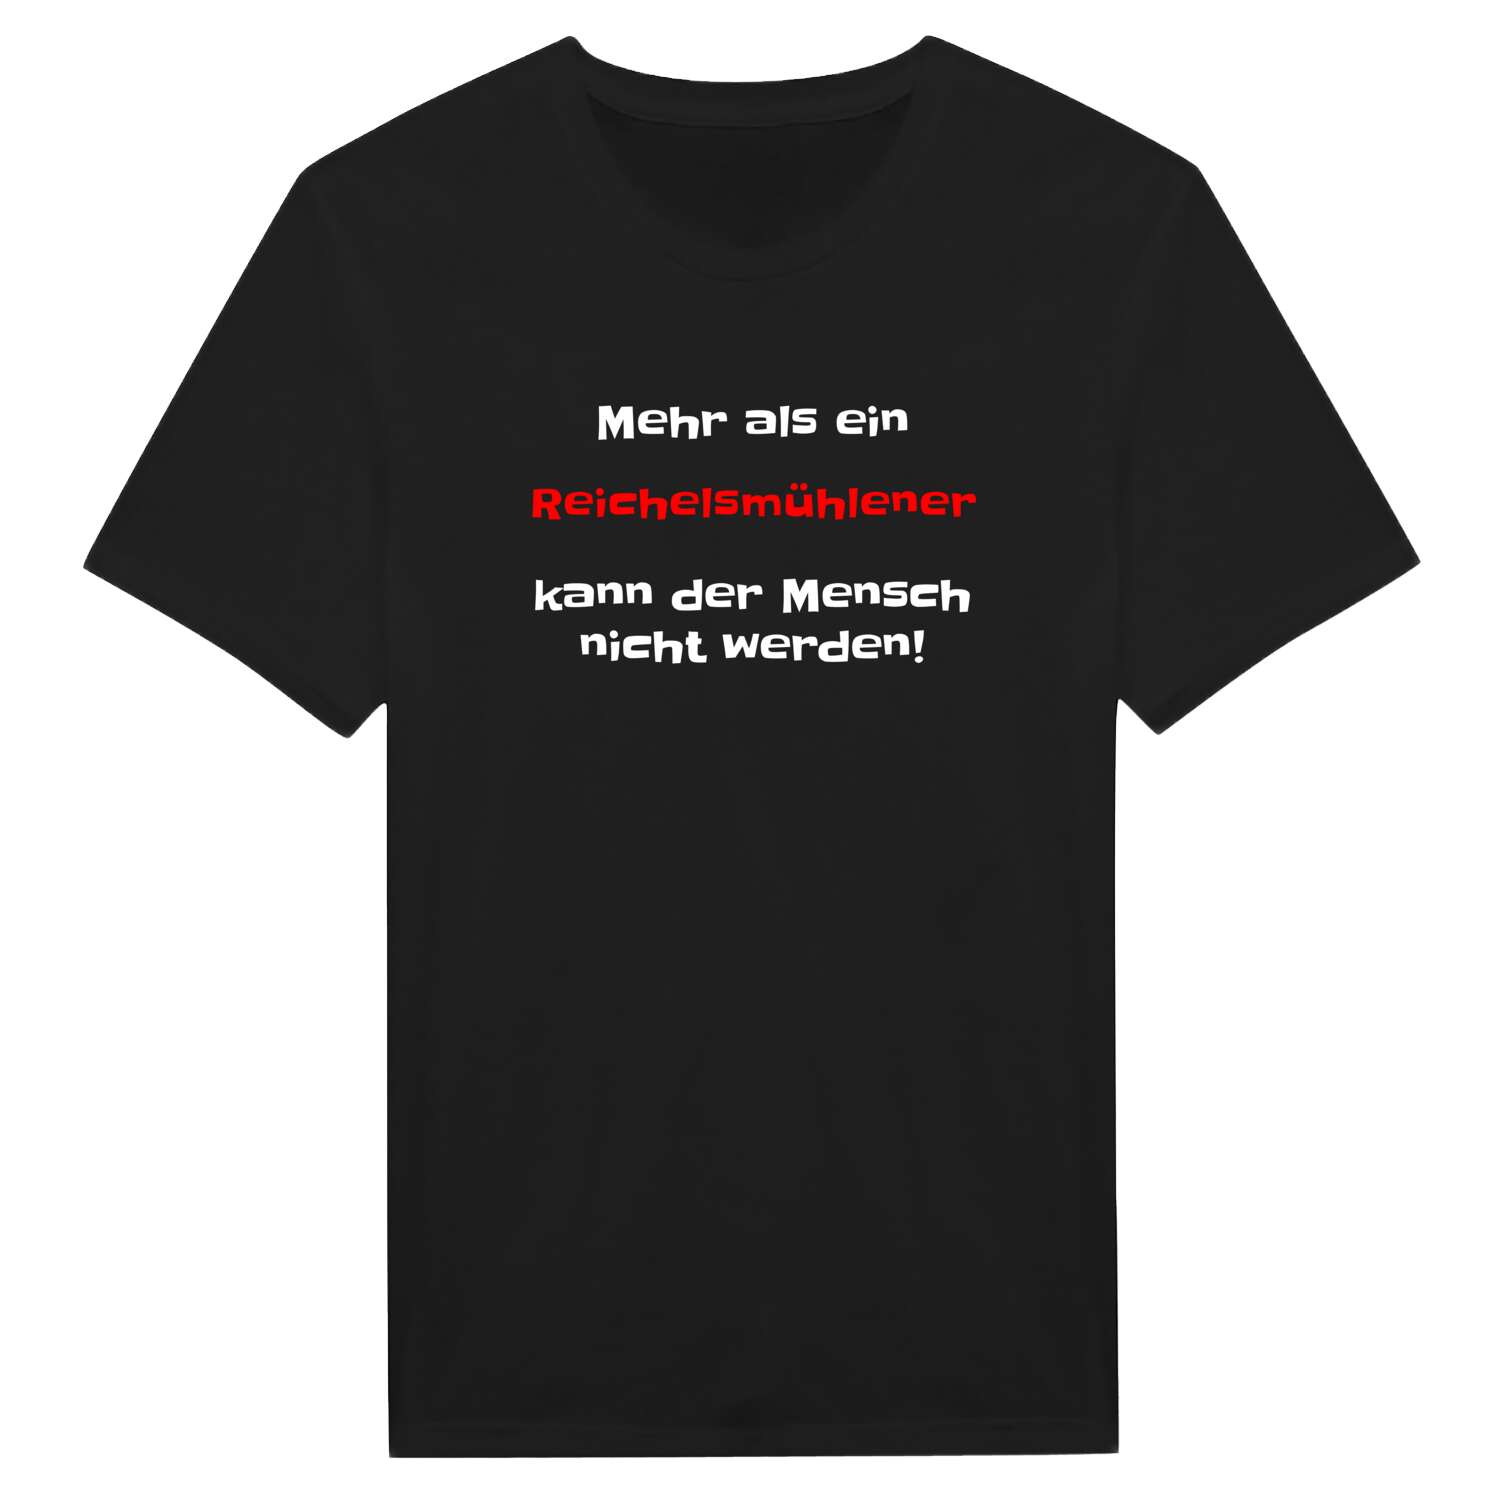 Reichelsmühle T-Shirt »Mehr als ein«